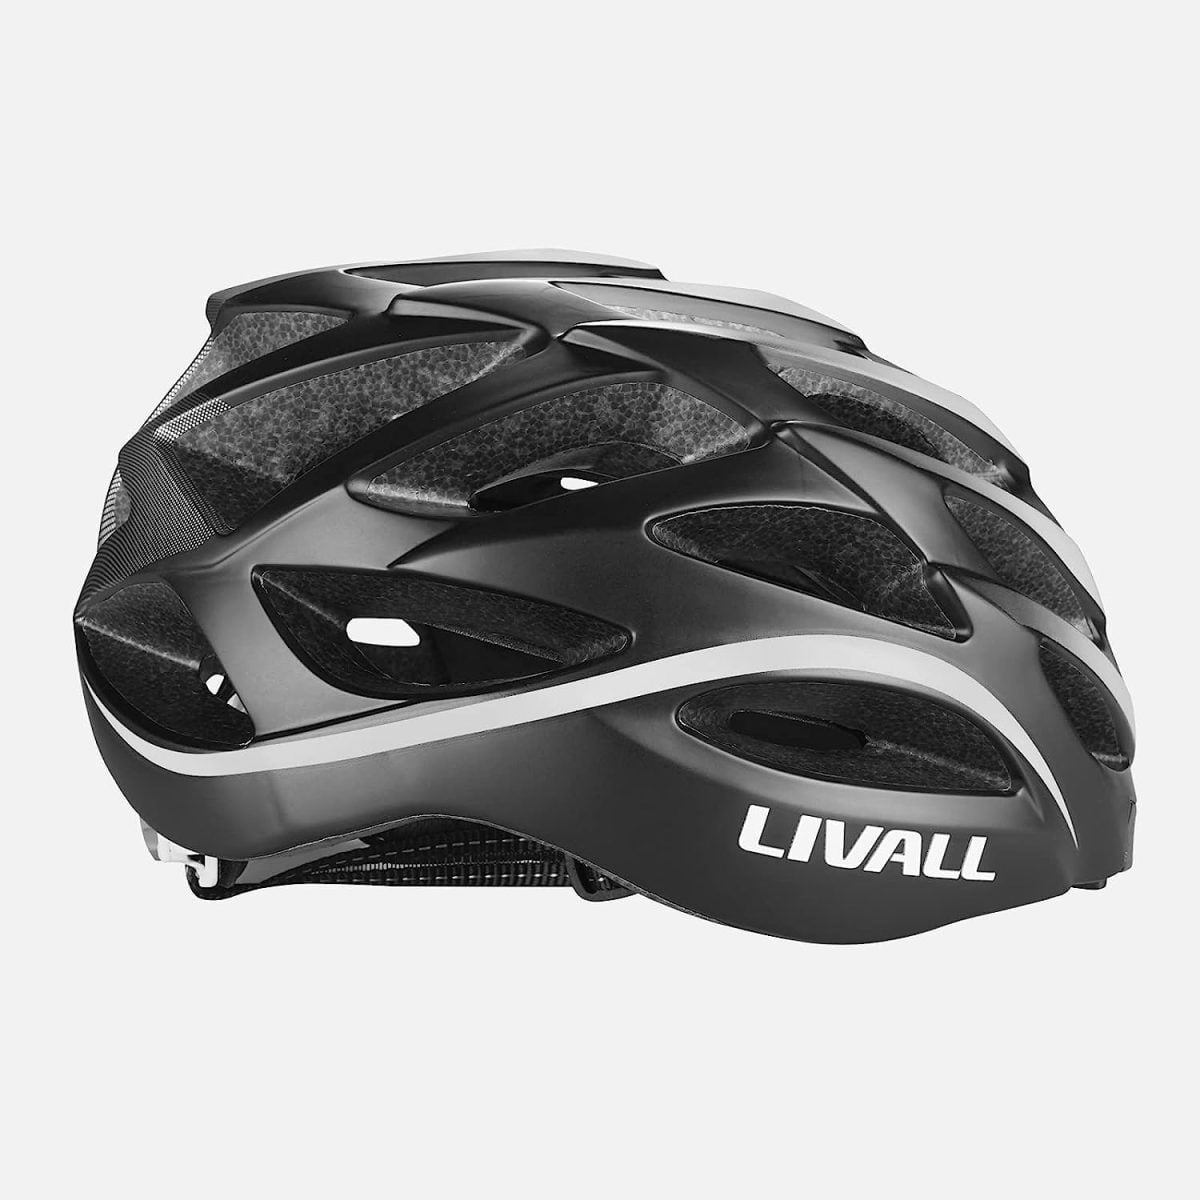 Livall Bh62 Bling Helmet Multi-Functional, Light Weight Black/White